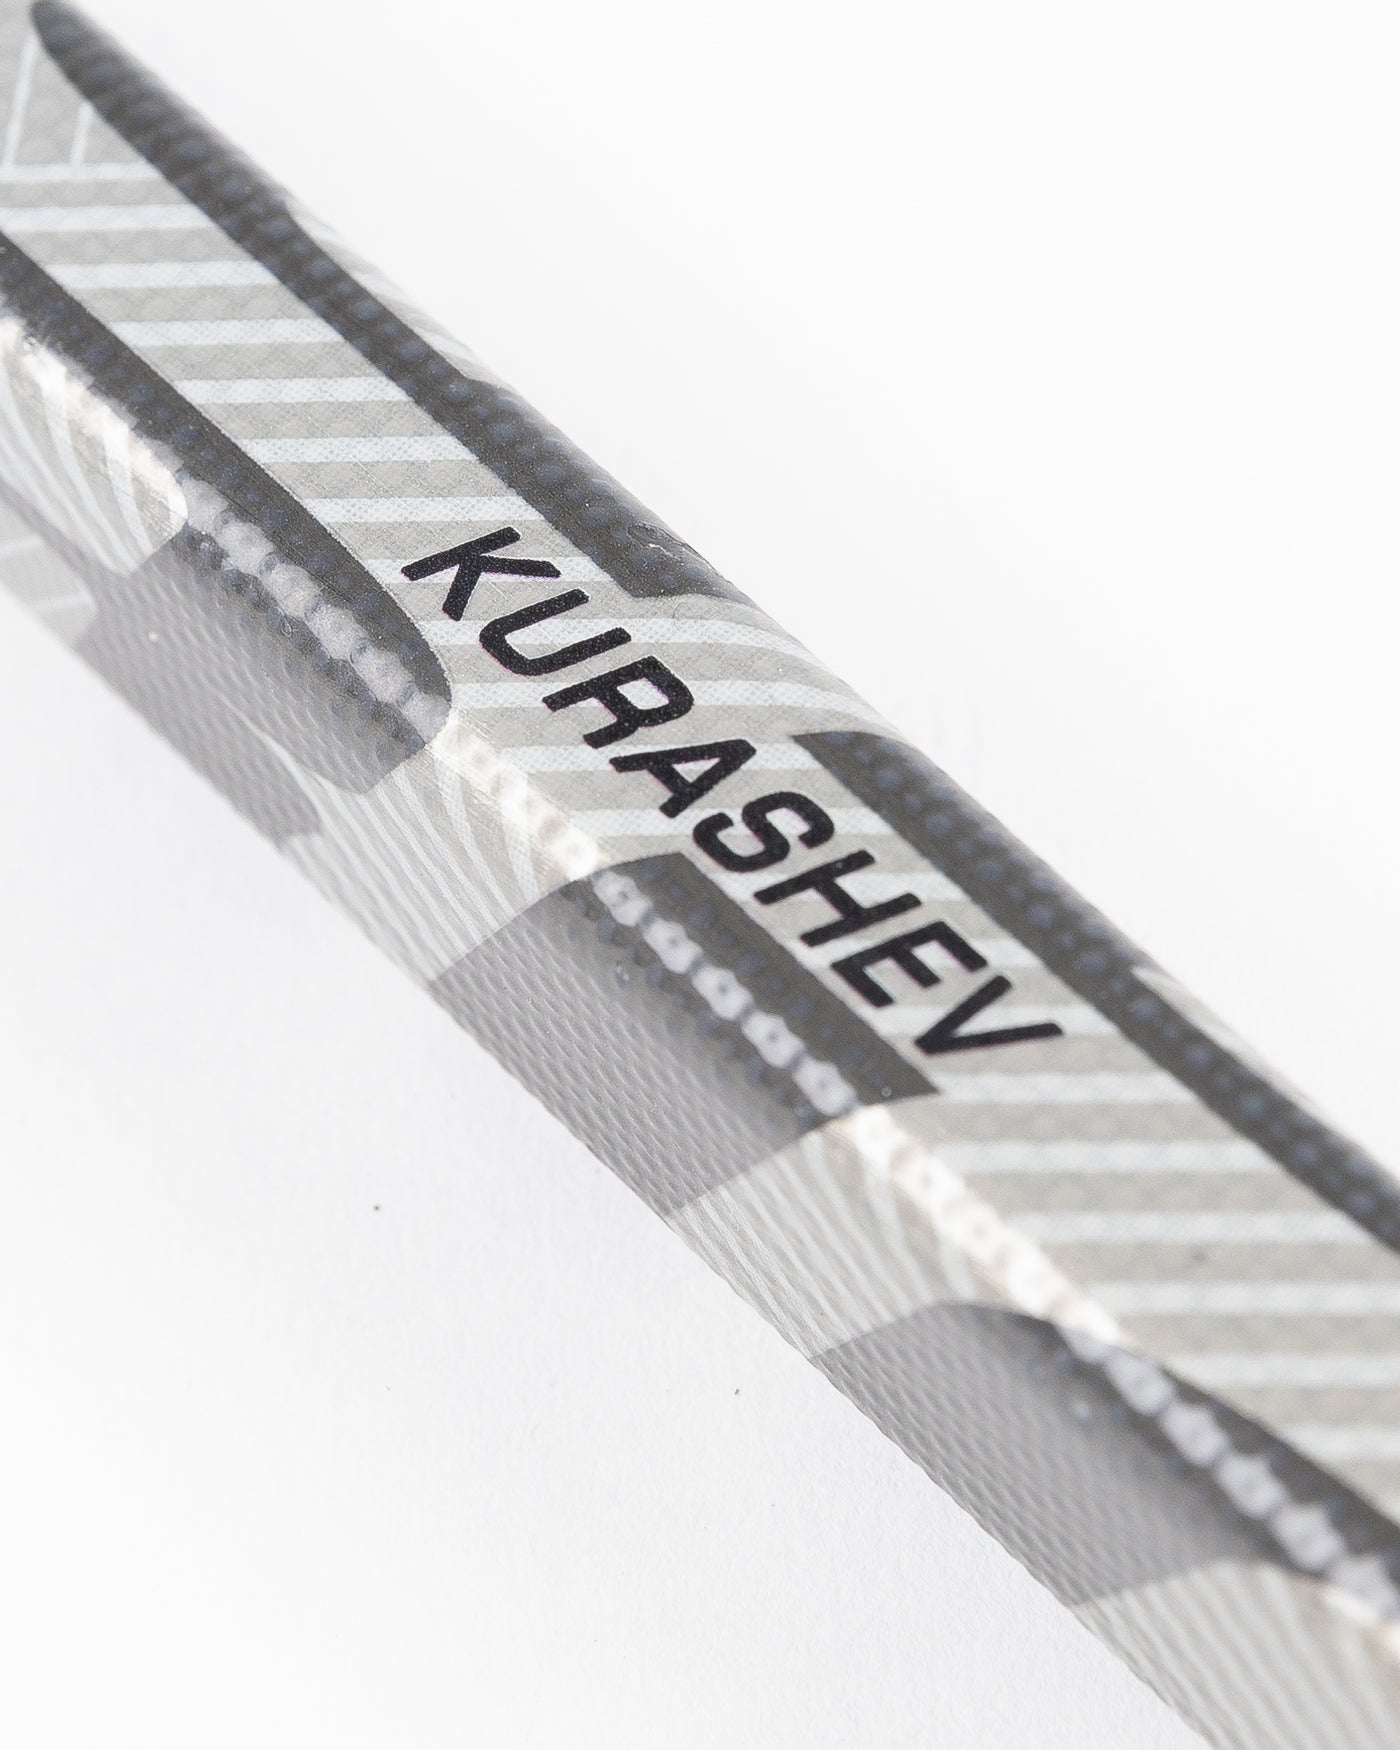 signed and game used Chicago Blackhawks Philipp Kurashev hockey stick - alt detail lay flat